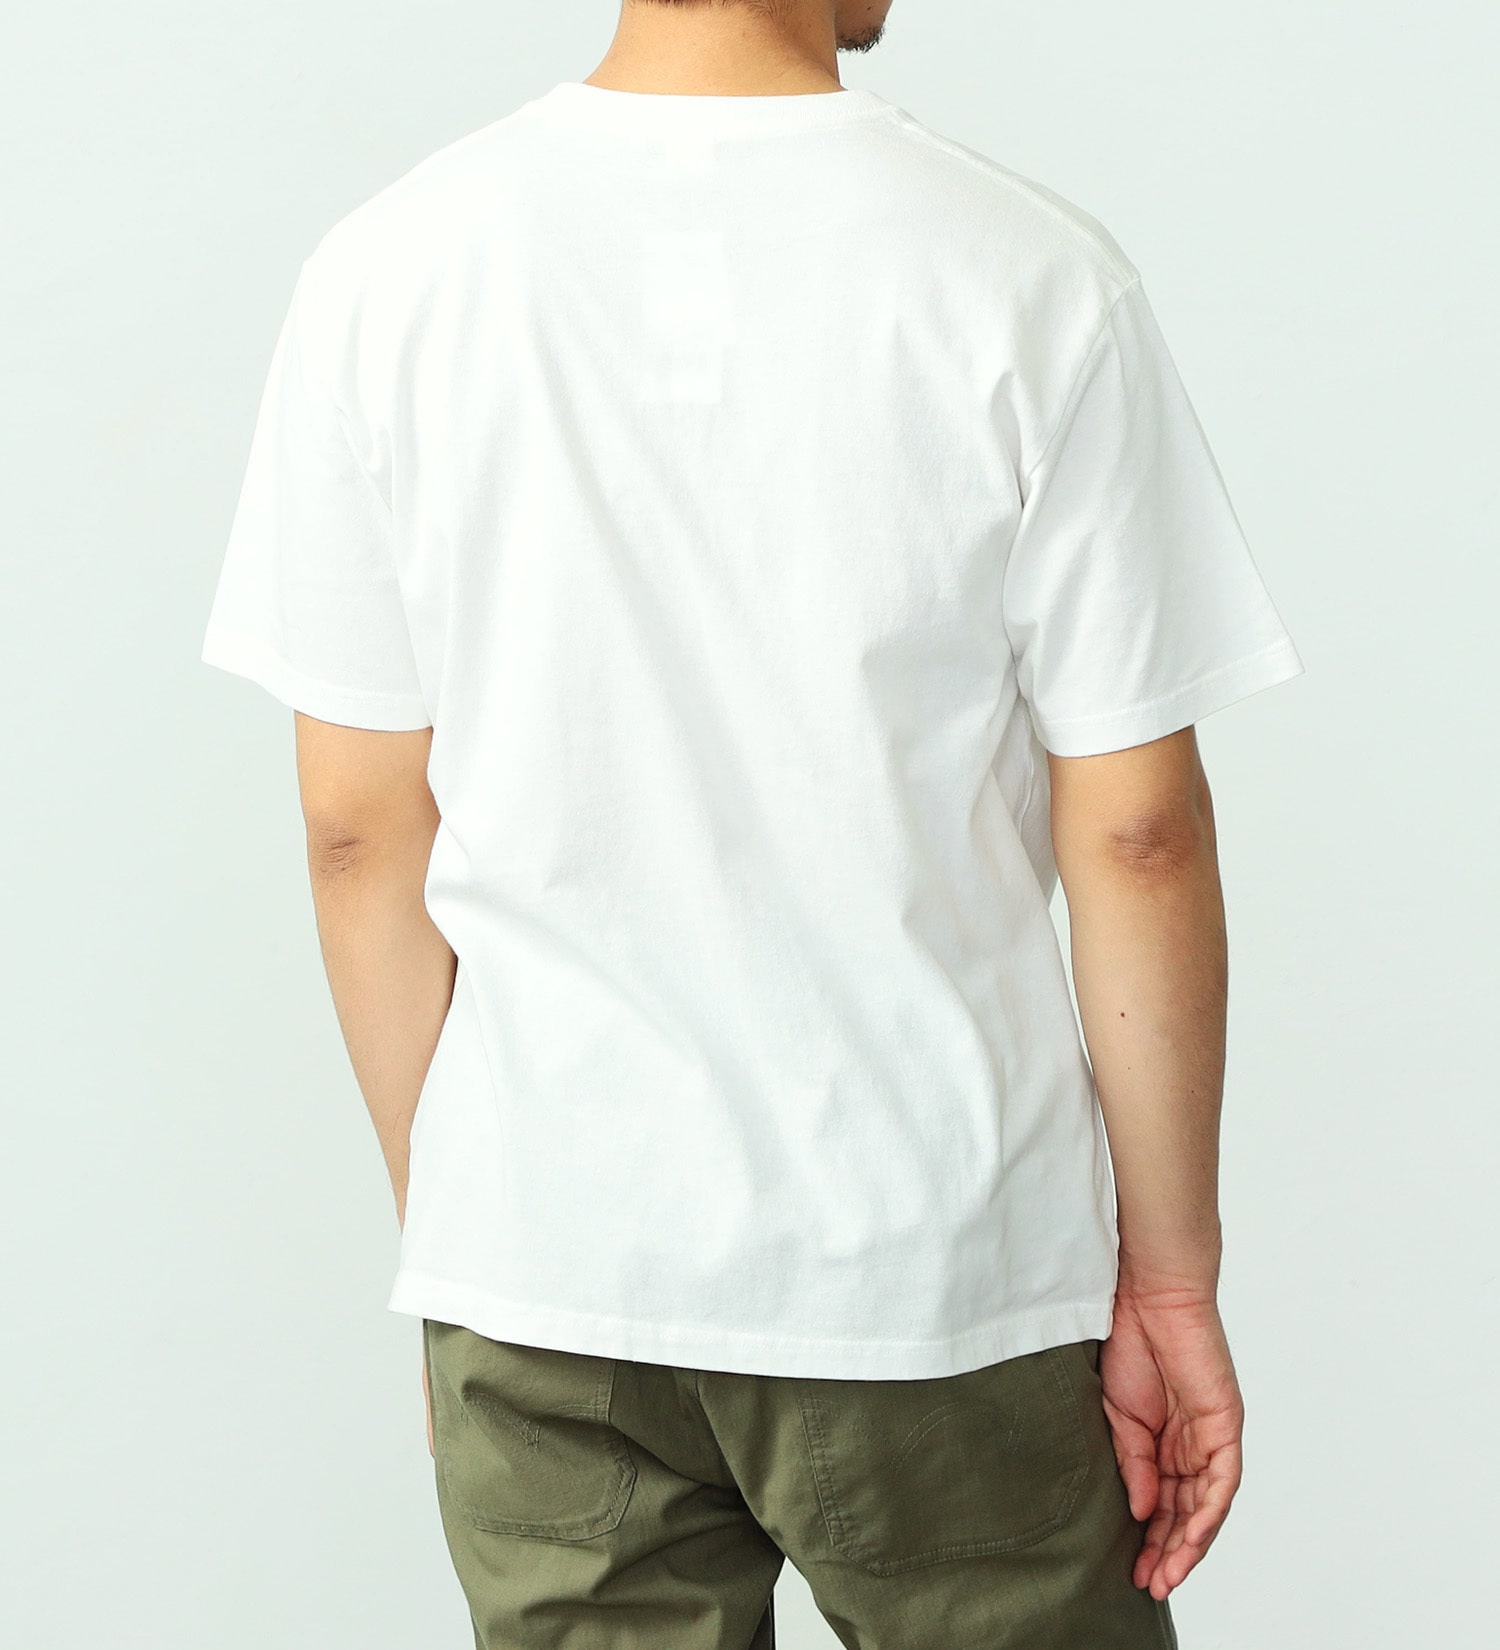 EDWIN(エドウイン)のボックスロゴプリントTシャツ【アウトレット店舗・WEB限定】|トップス/Tシャツ/カットソー/メンズ|ホワイト